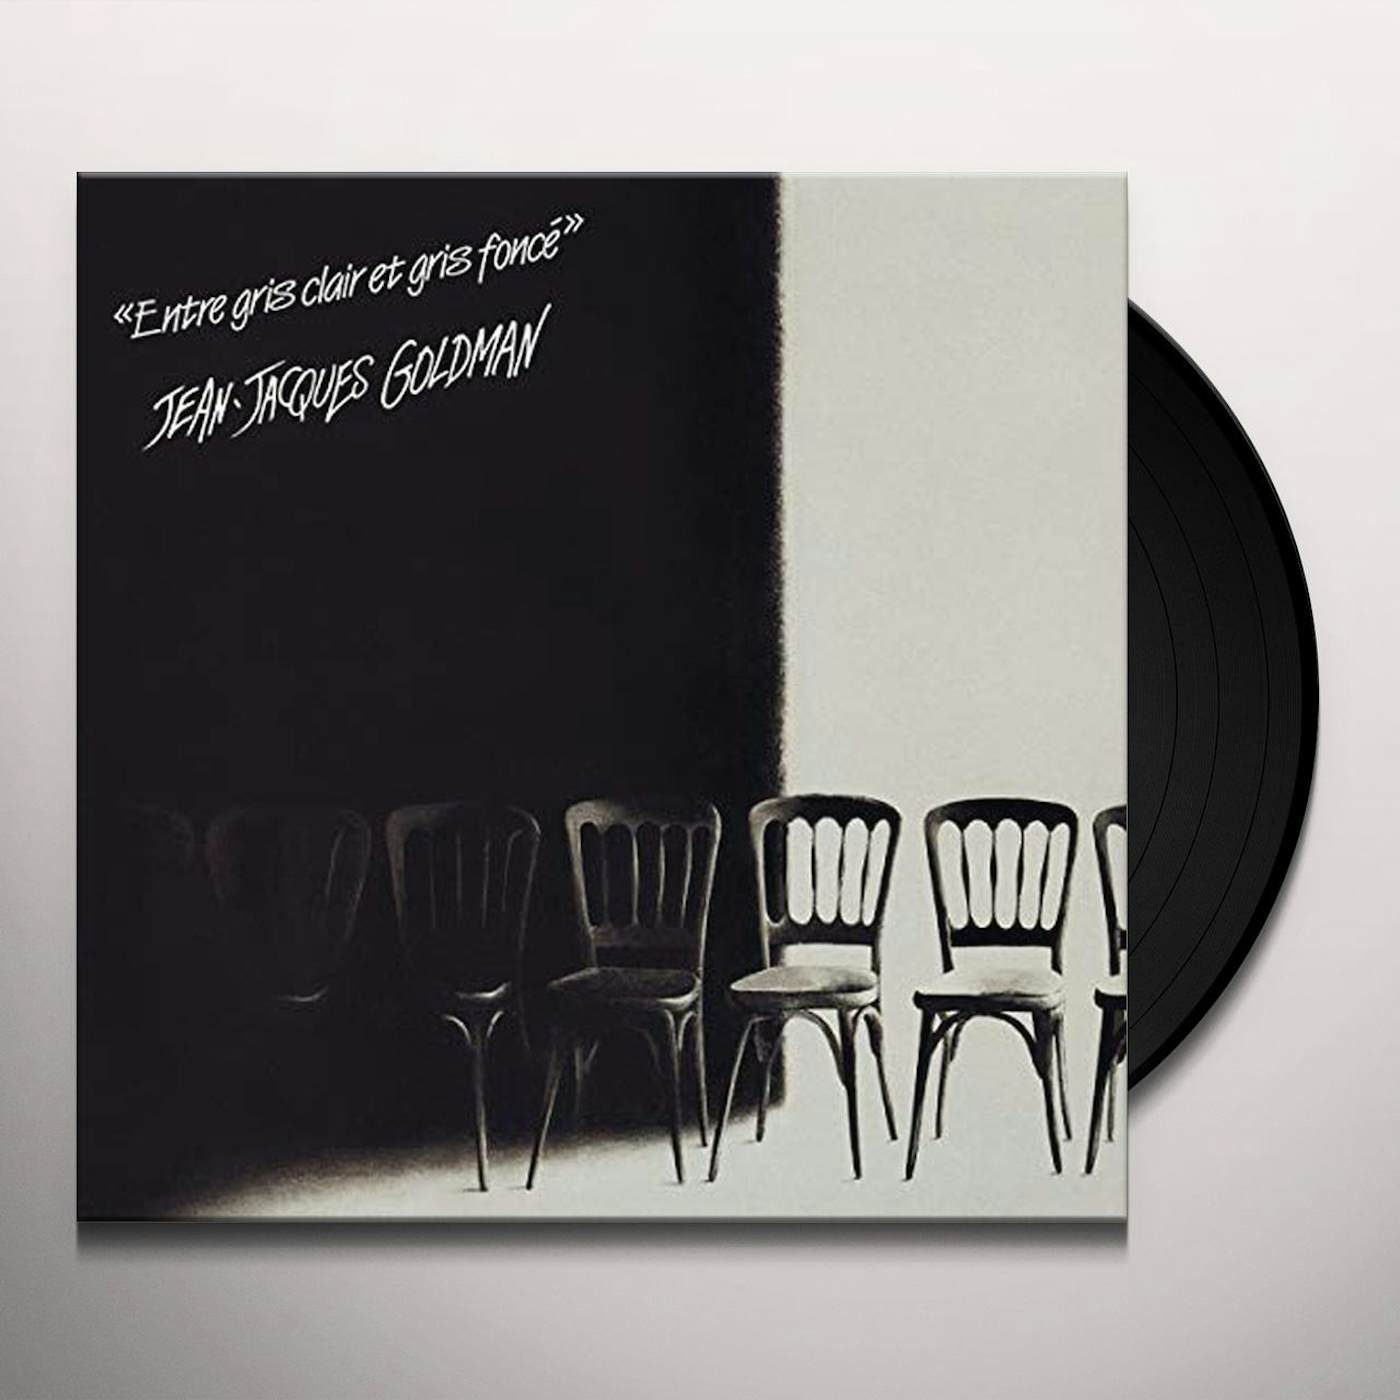 Jean-Jacques Goldman ENTRE GRIS CLAIR ET GRIS FONCE Vinyl Record